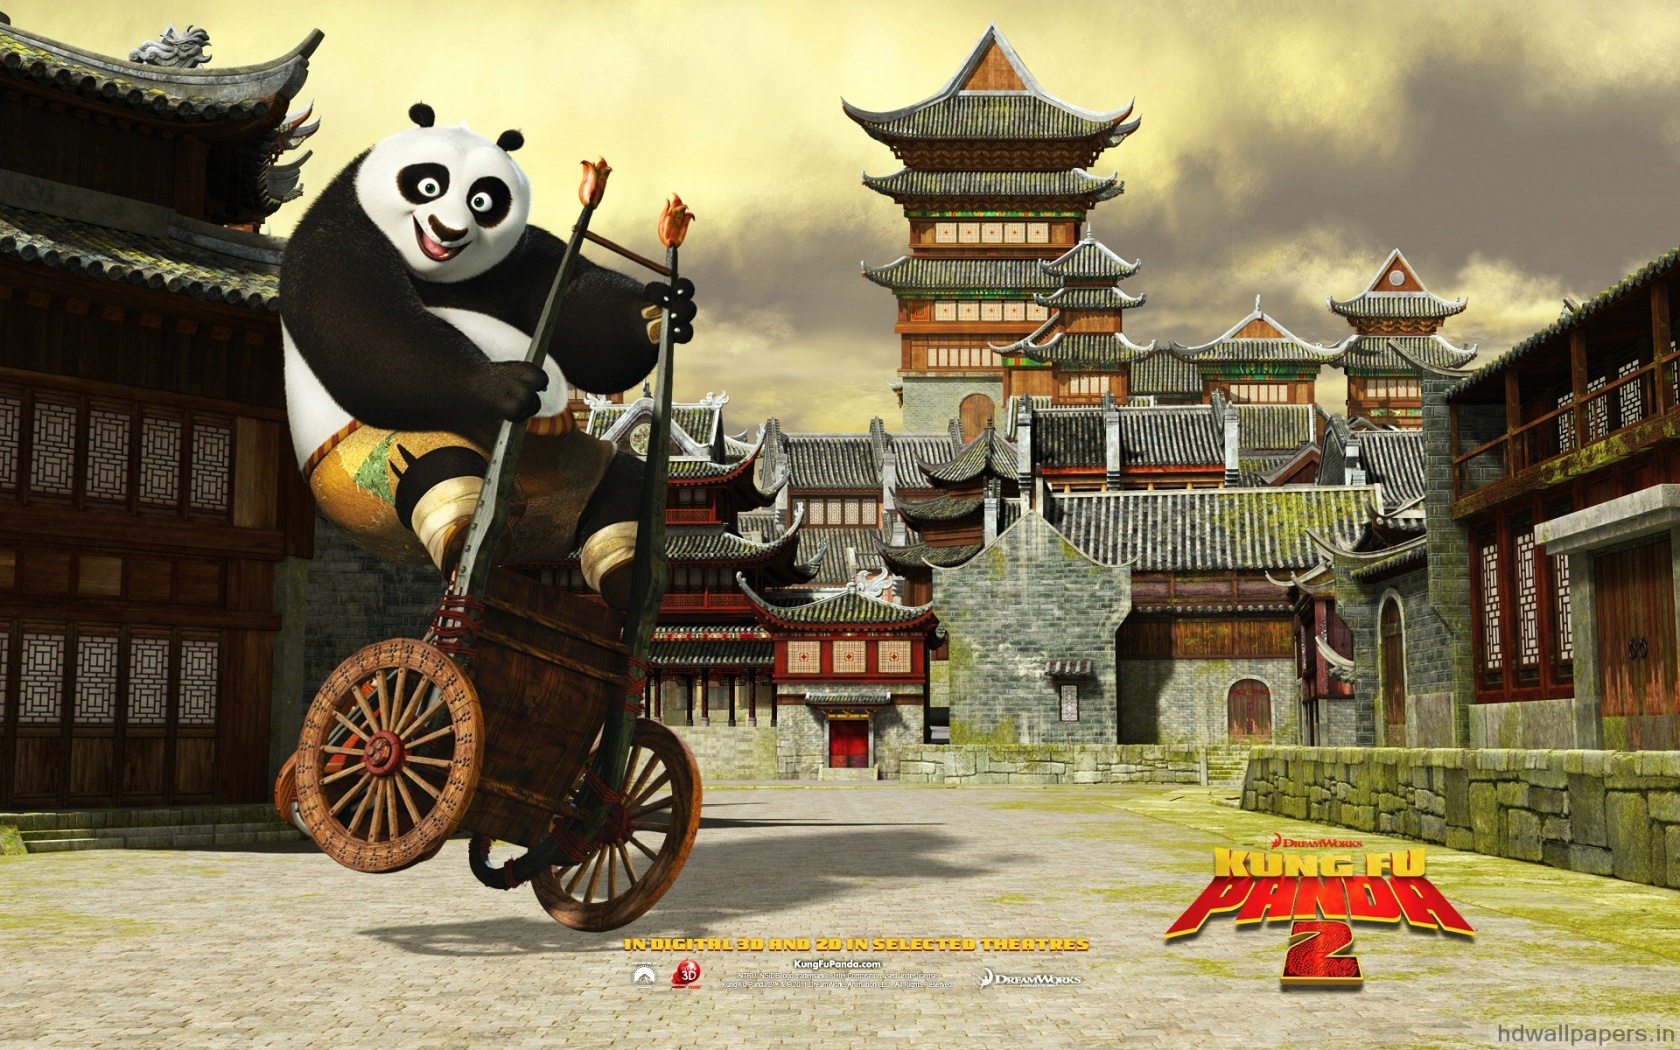 دانلود فیلم Kung Fu Panda 2 2011